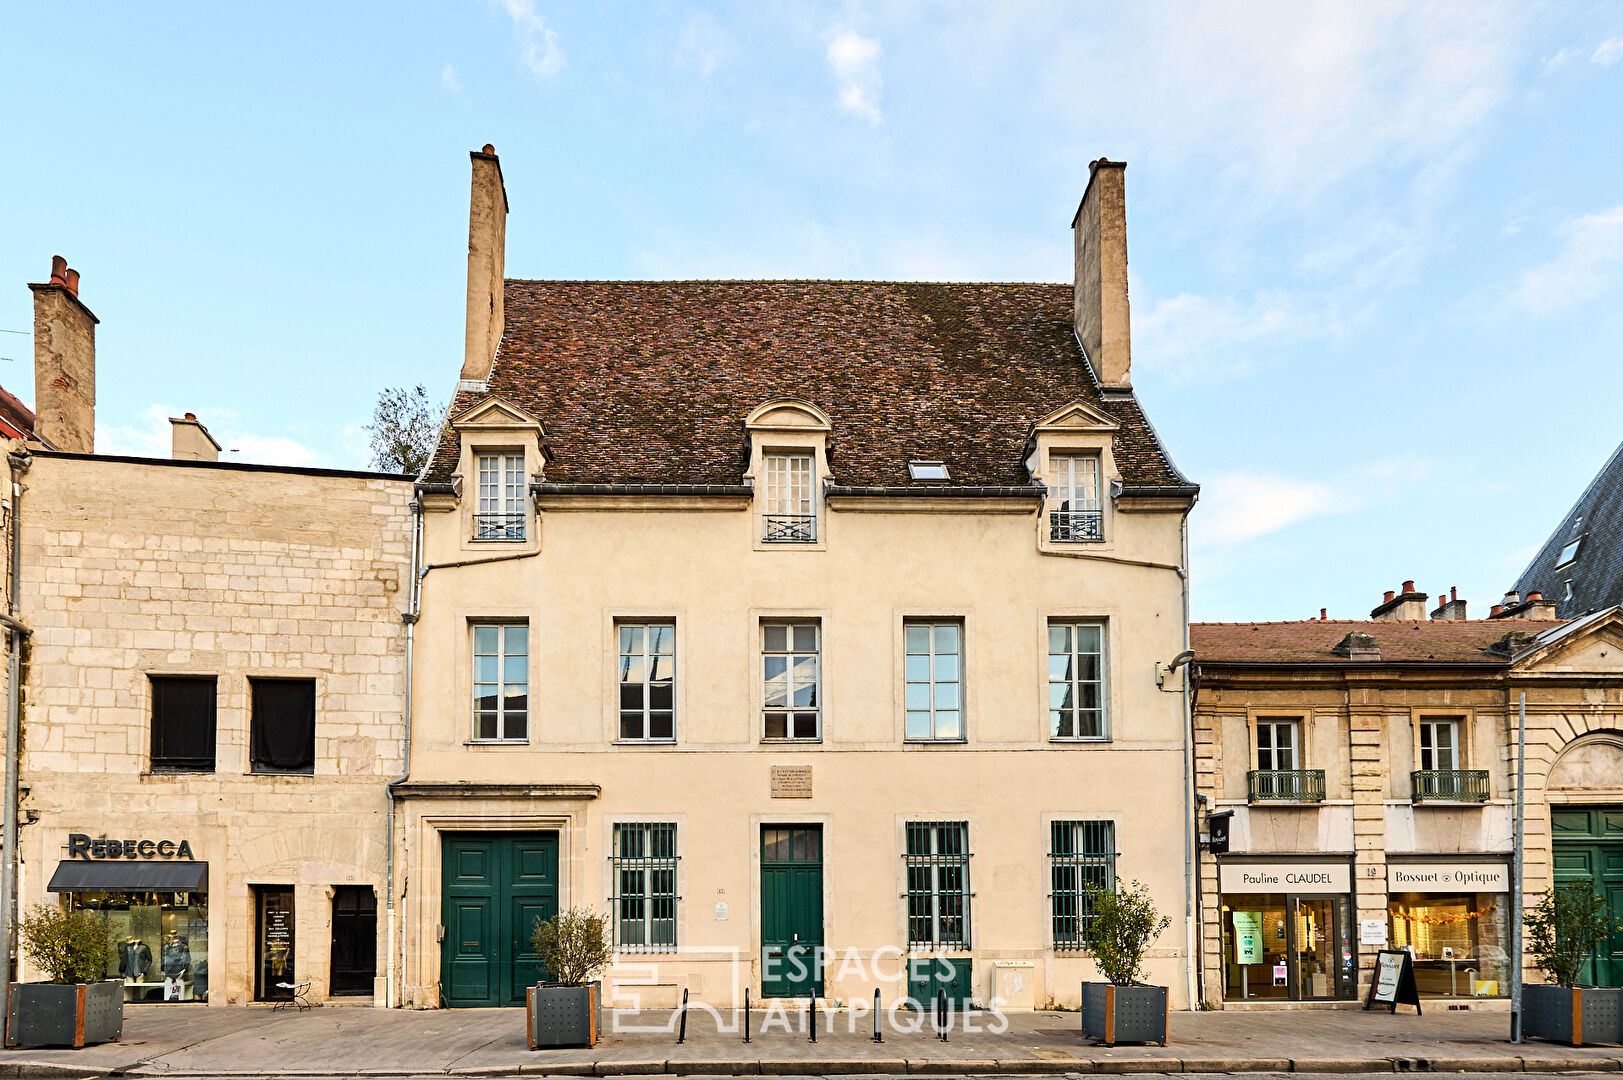 l’Hôtel Particulier chargé d’histoire au coeur de Dijon